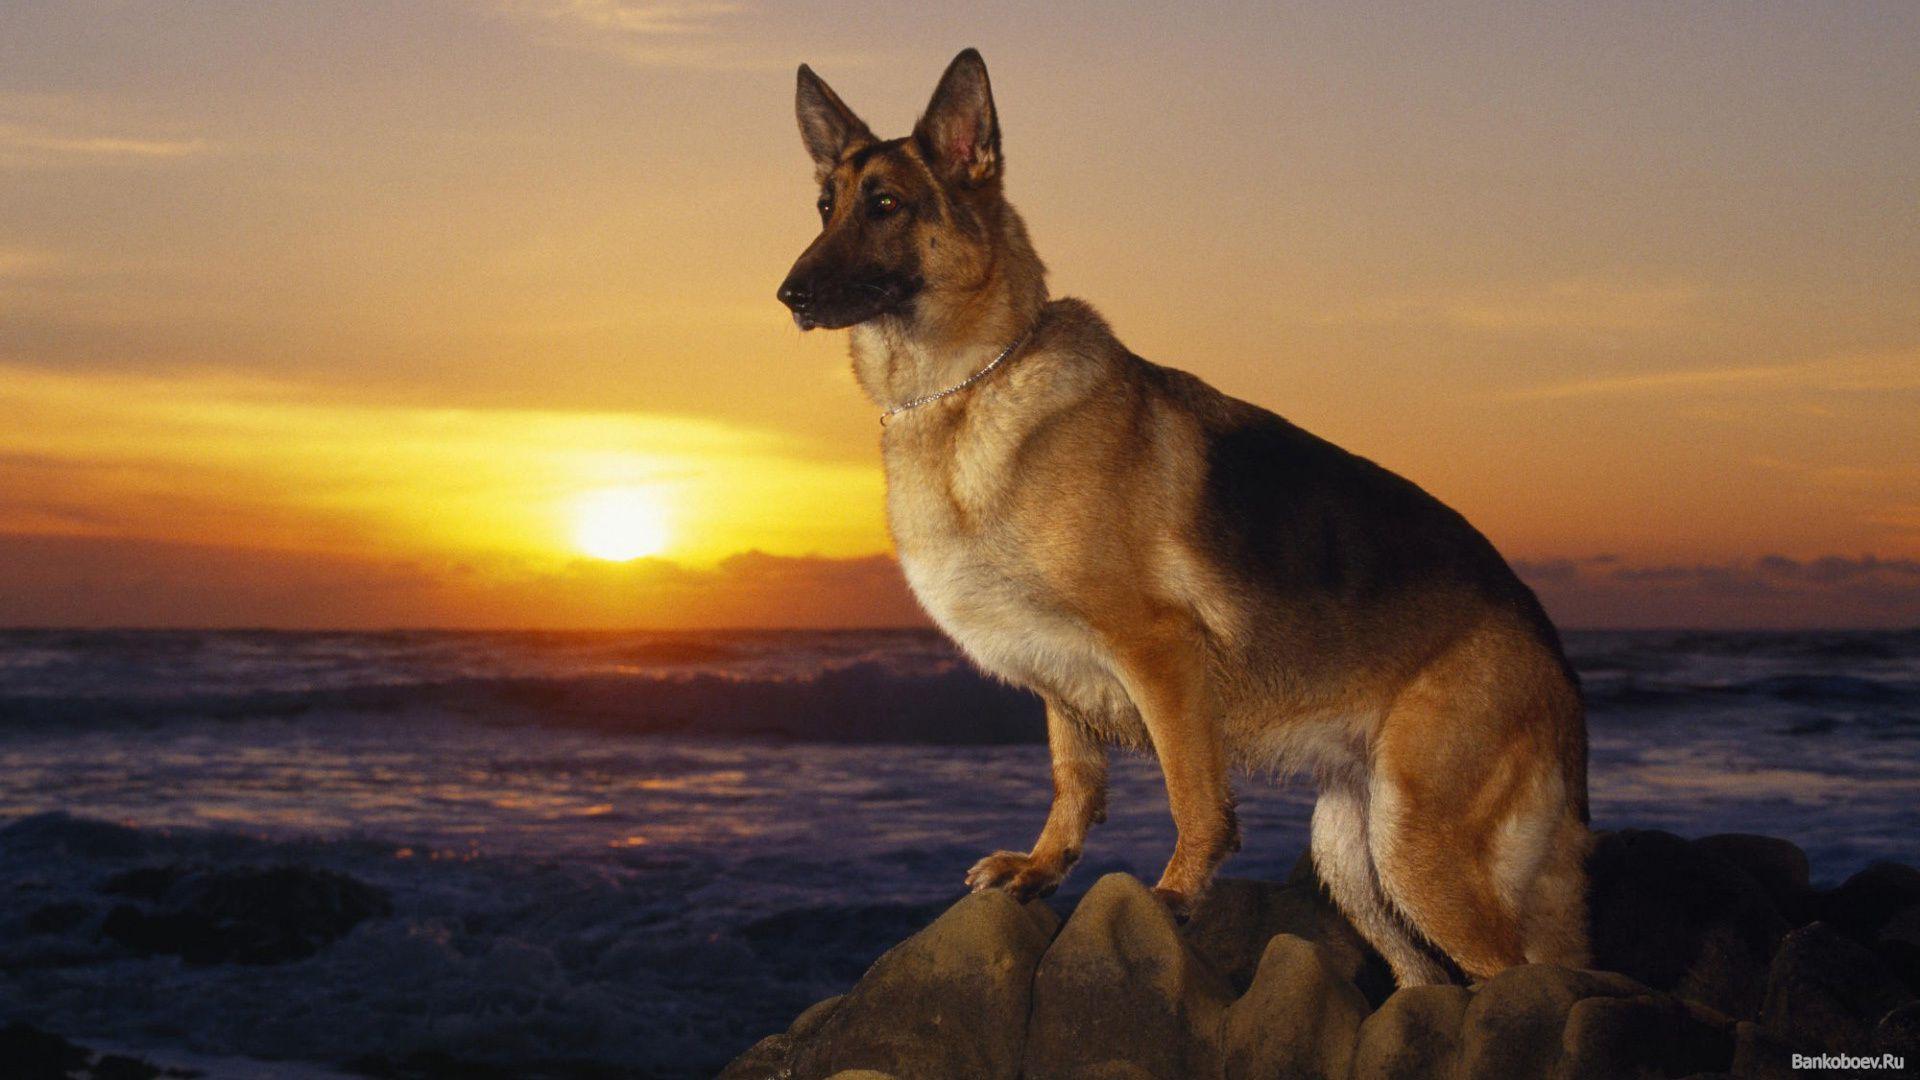 German Shepherd dog at sunset wallpaper and image